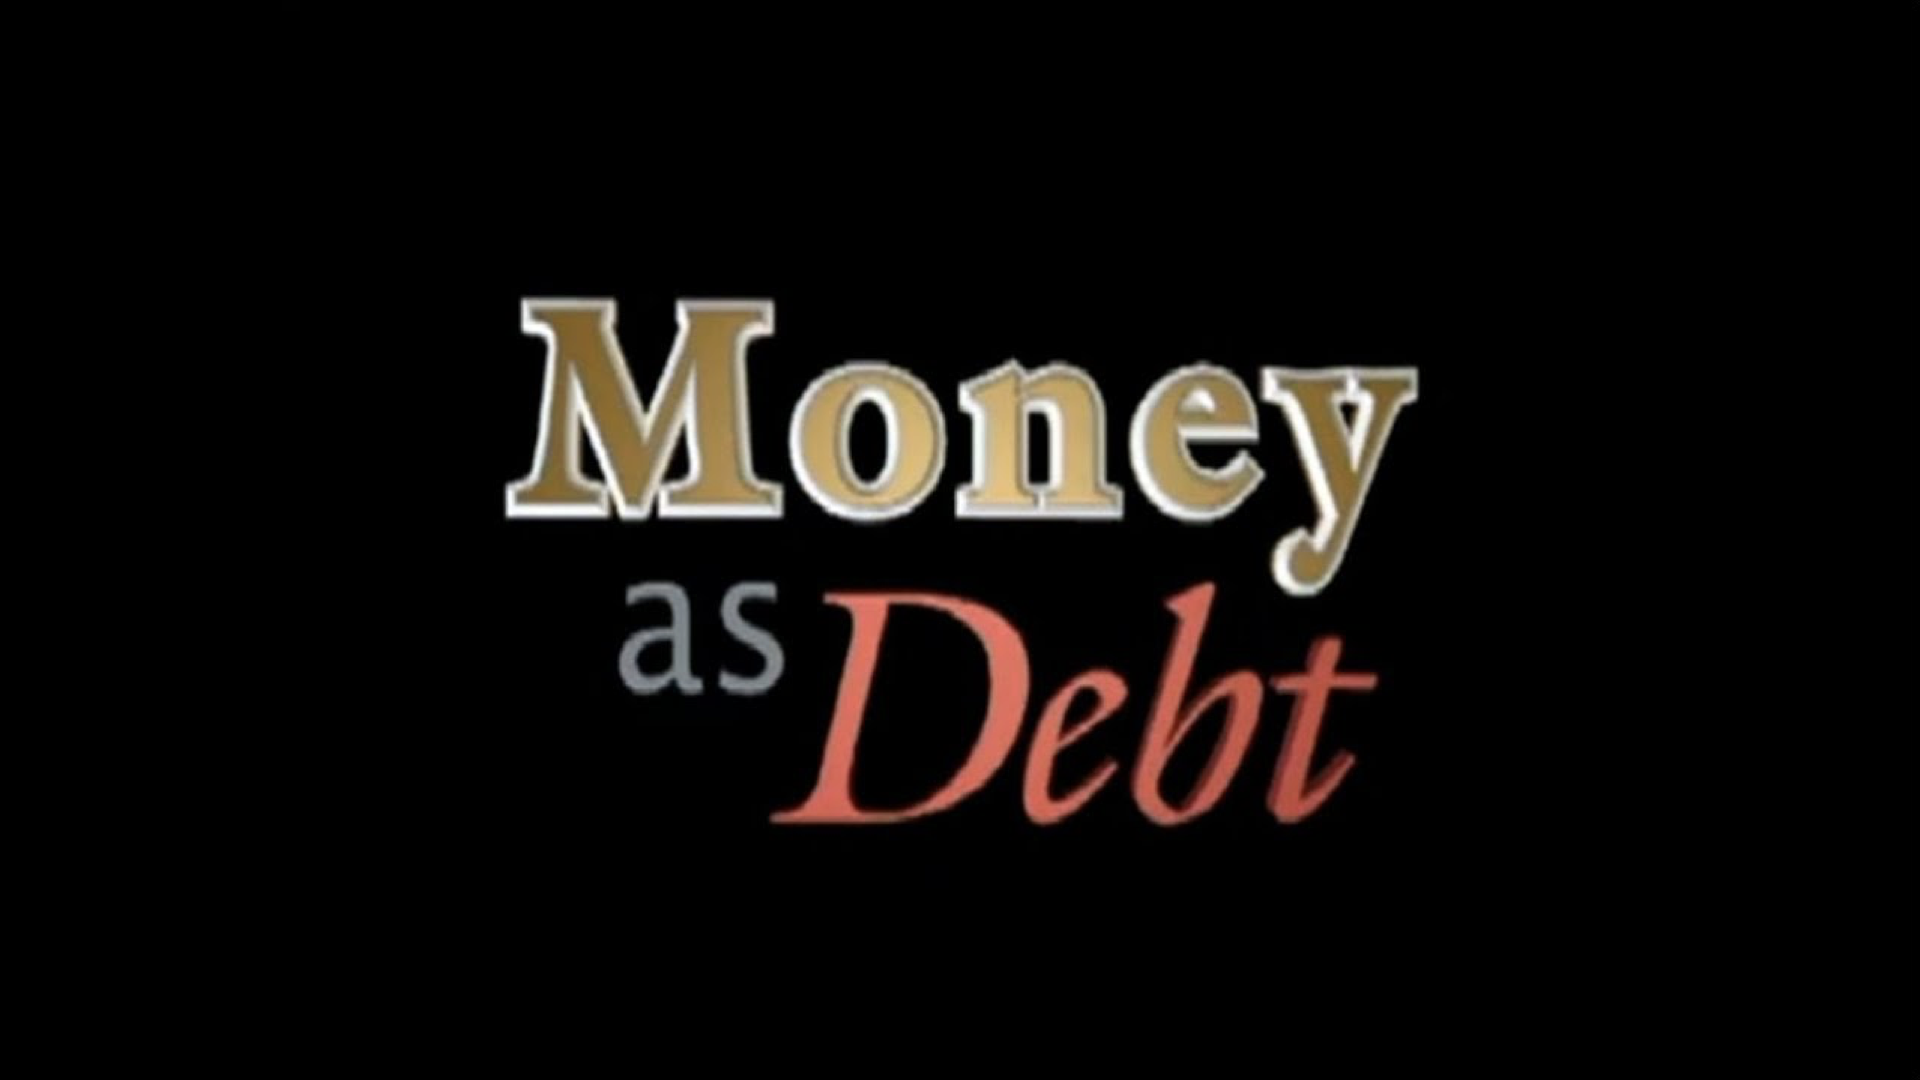 Money as Debt